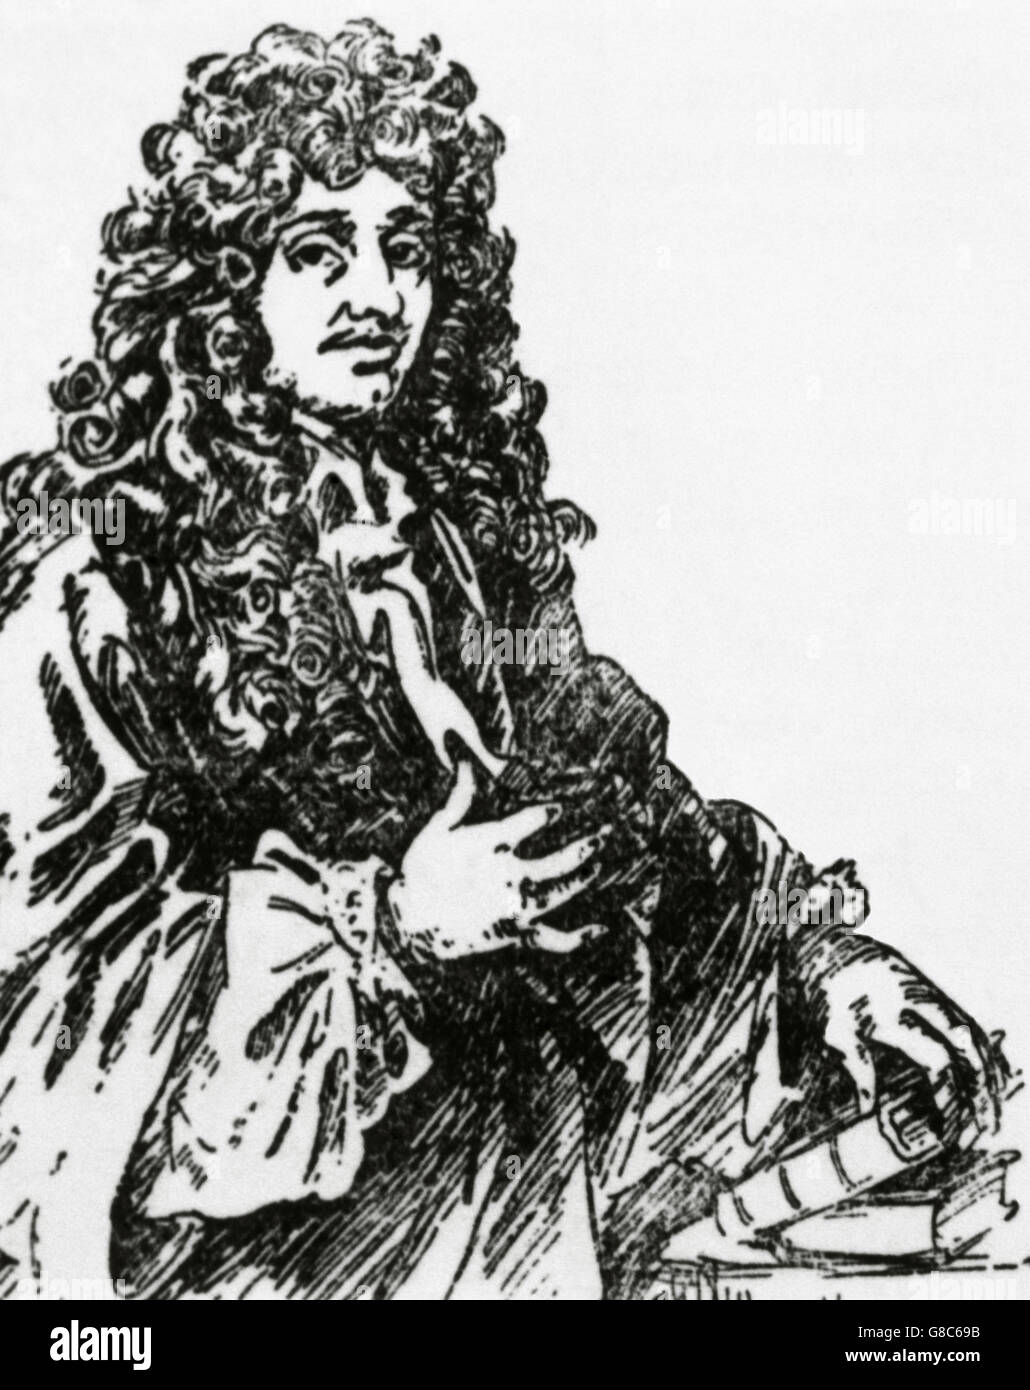 Christiaan Huygens (1629-1695). Niederländischer Mathematiker und Wissenschaftler. Er ist bekannt vor allem als Astronom, Physiker, Probabilist und Uhrmacherei. Porträt. Gravur. Stockfoto